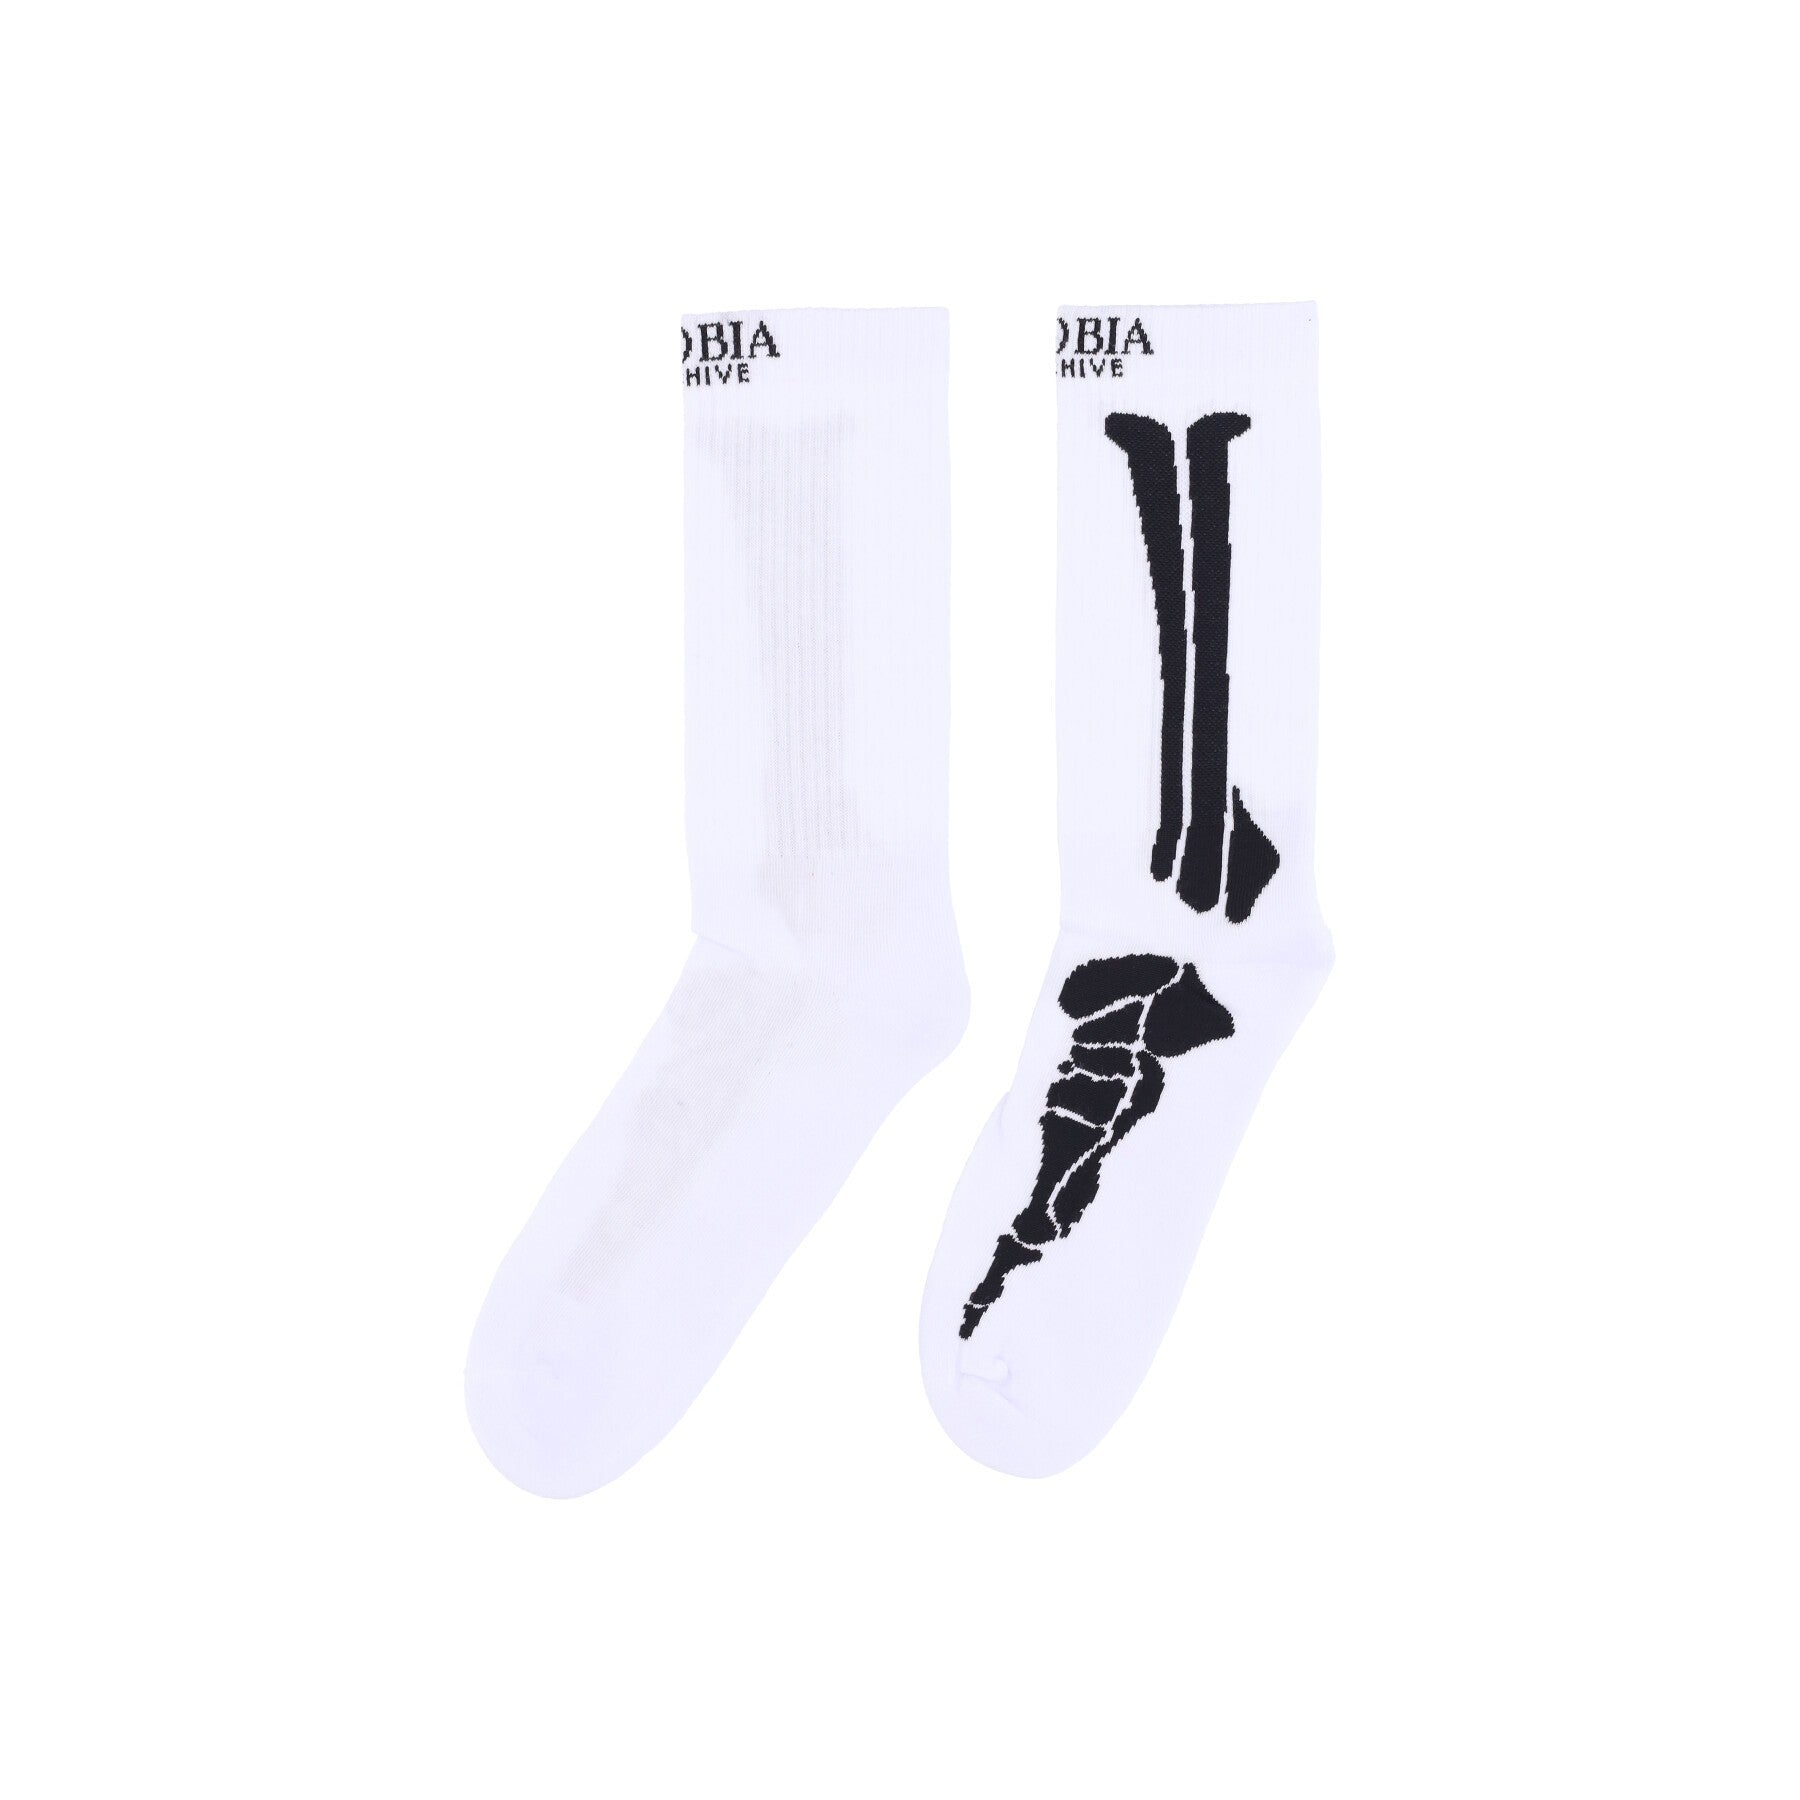 Phobia, Calza Media Uomo Bones Socks, White/black